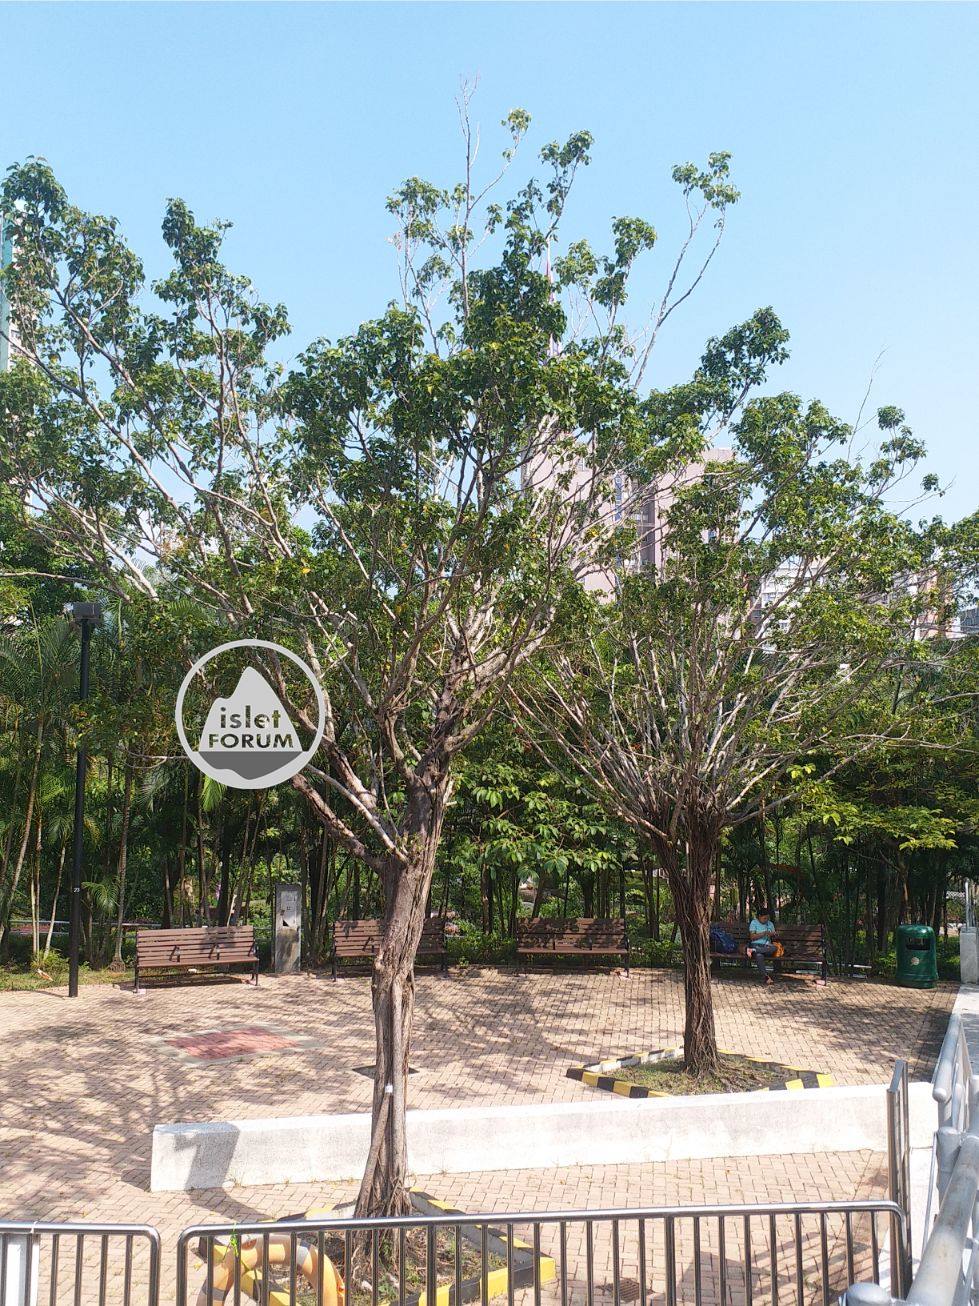 樂富遊樂場lok fu recreation ground (17).jpg